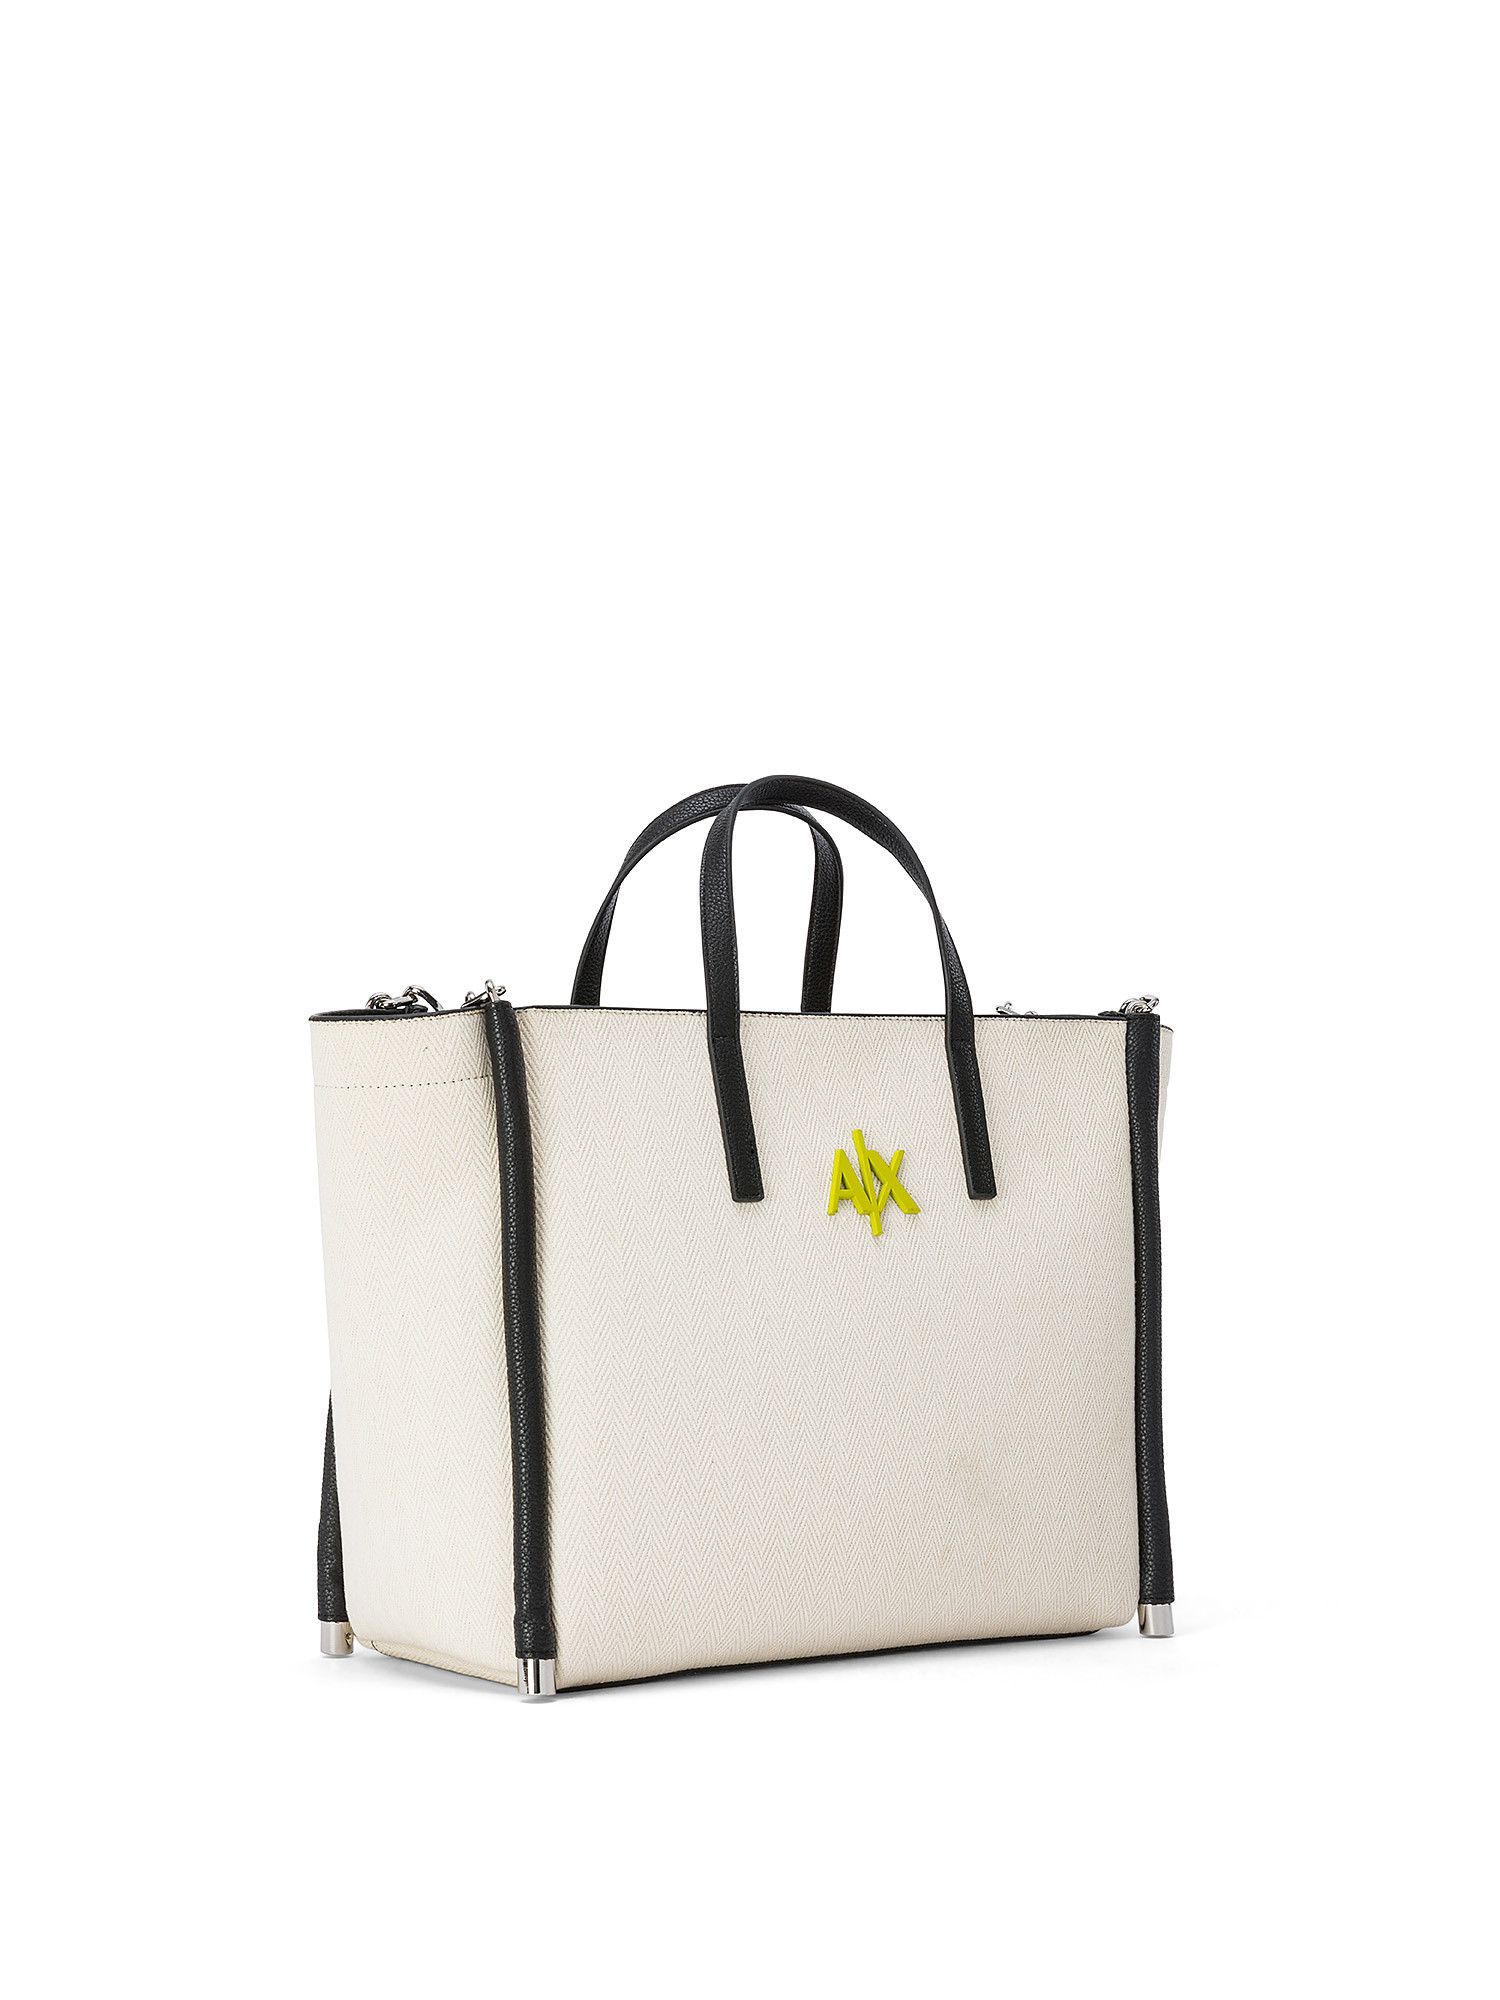 Armani Exchange - Shopper bag with logo, Light Beige, large image number 1